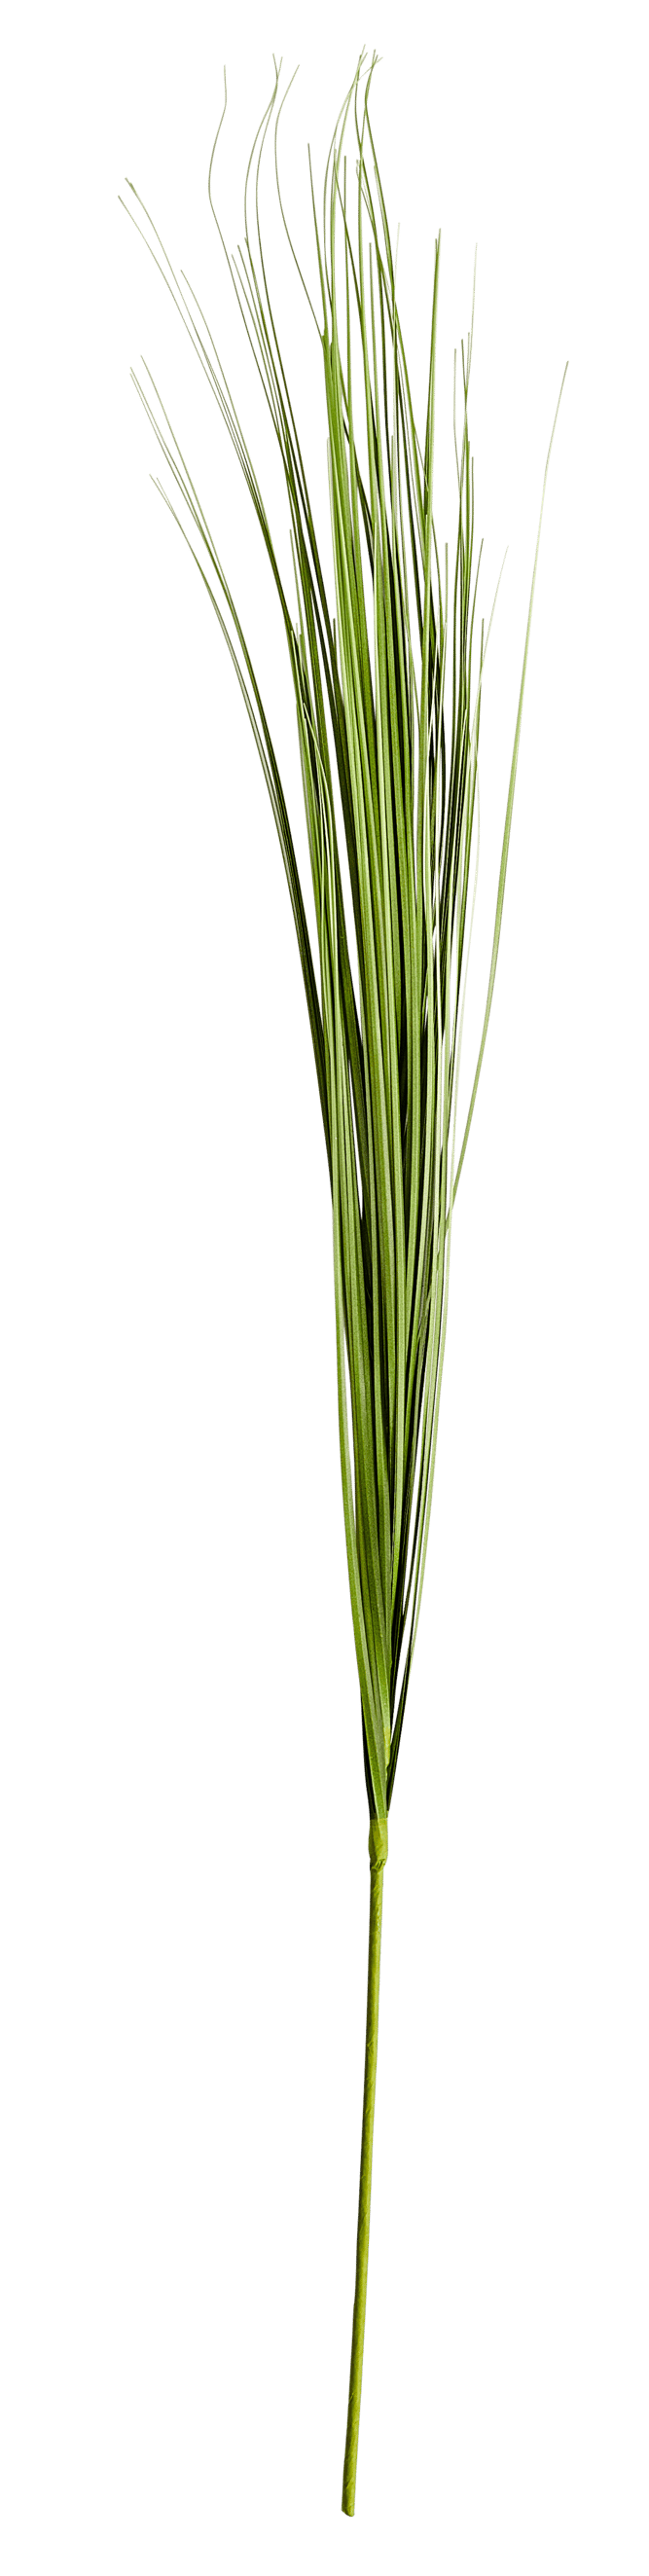 GRASS Botte dherbe vert Long. 95 cm